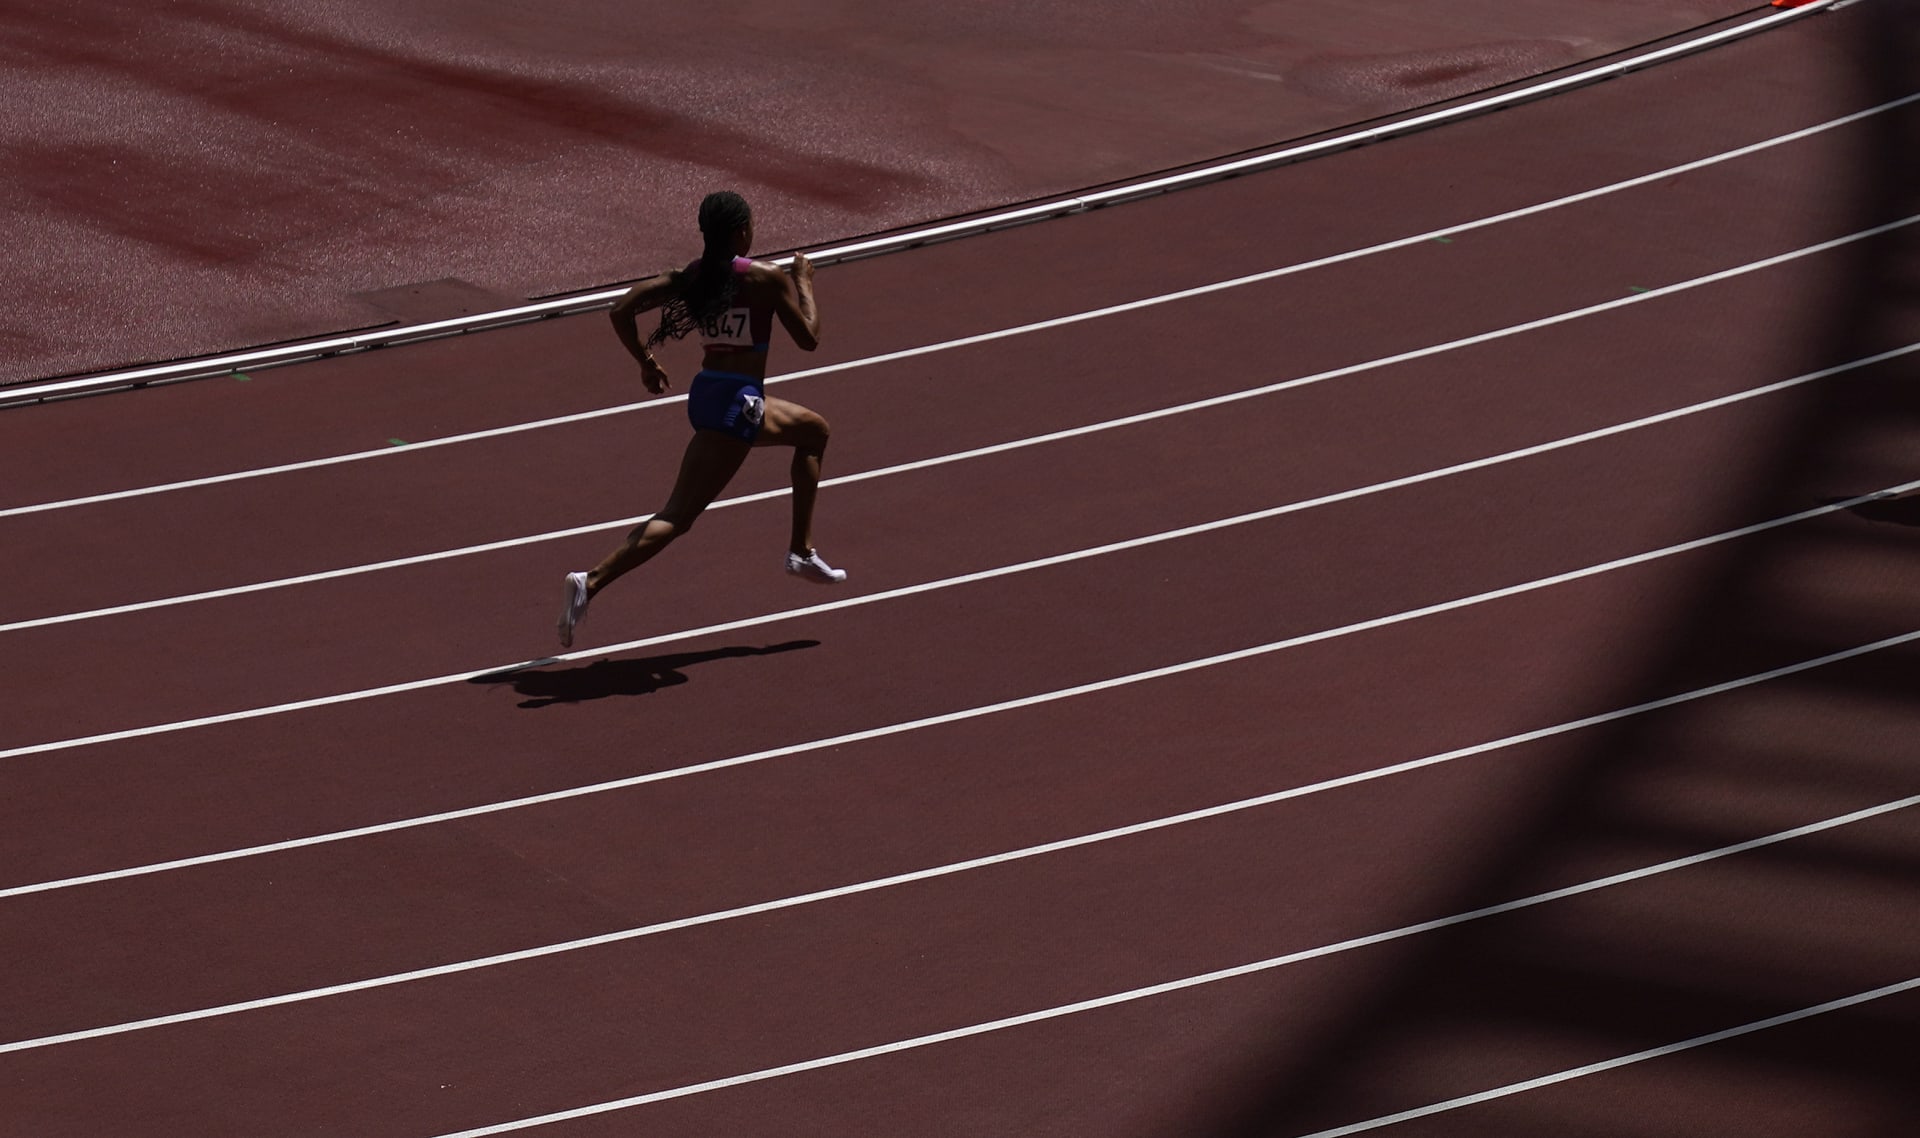 Rychlá jako nikdo. Američanka Allyson Felixová nedávno zažila komplikovaný porod, rozchod s obchodním partnerem. Přesto v Tokiu díky triumfu v závodě na 4x400 metrů získala svou jedenáctou olympijskou medaili, což v historii nedokázala ani žádná jiná atletka, ani žádný jiný americký atlet.